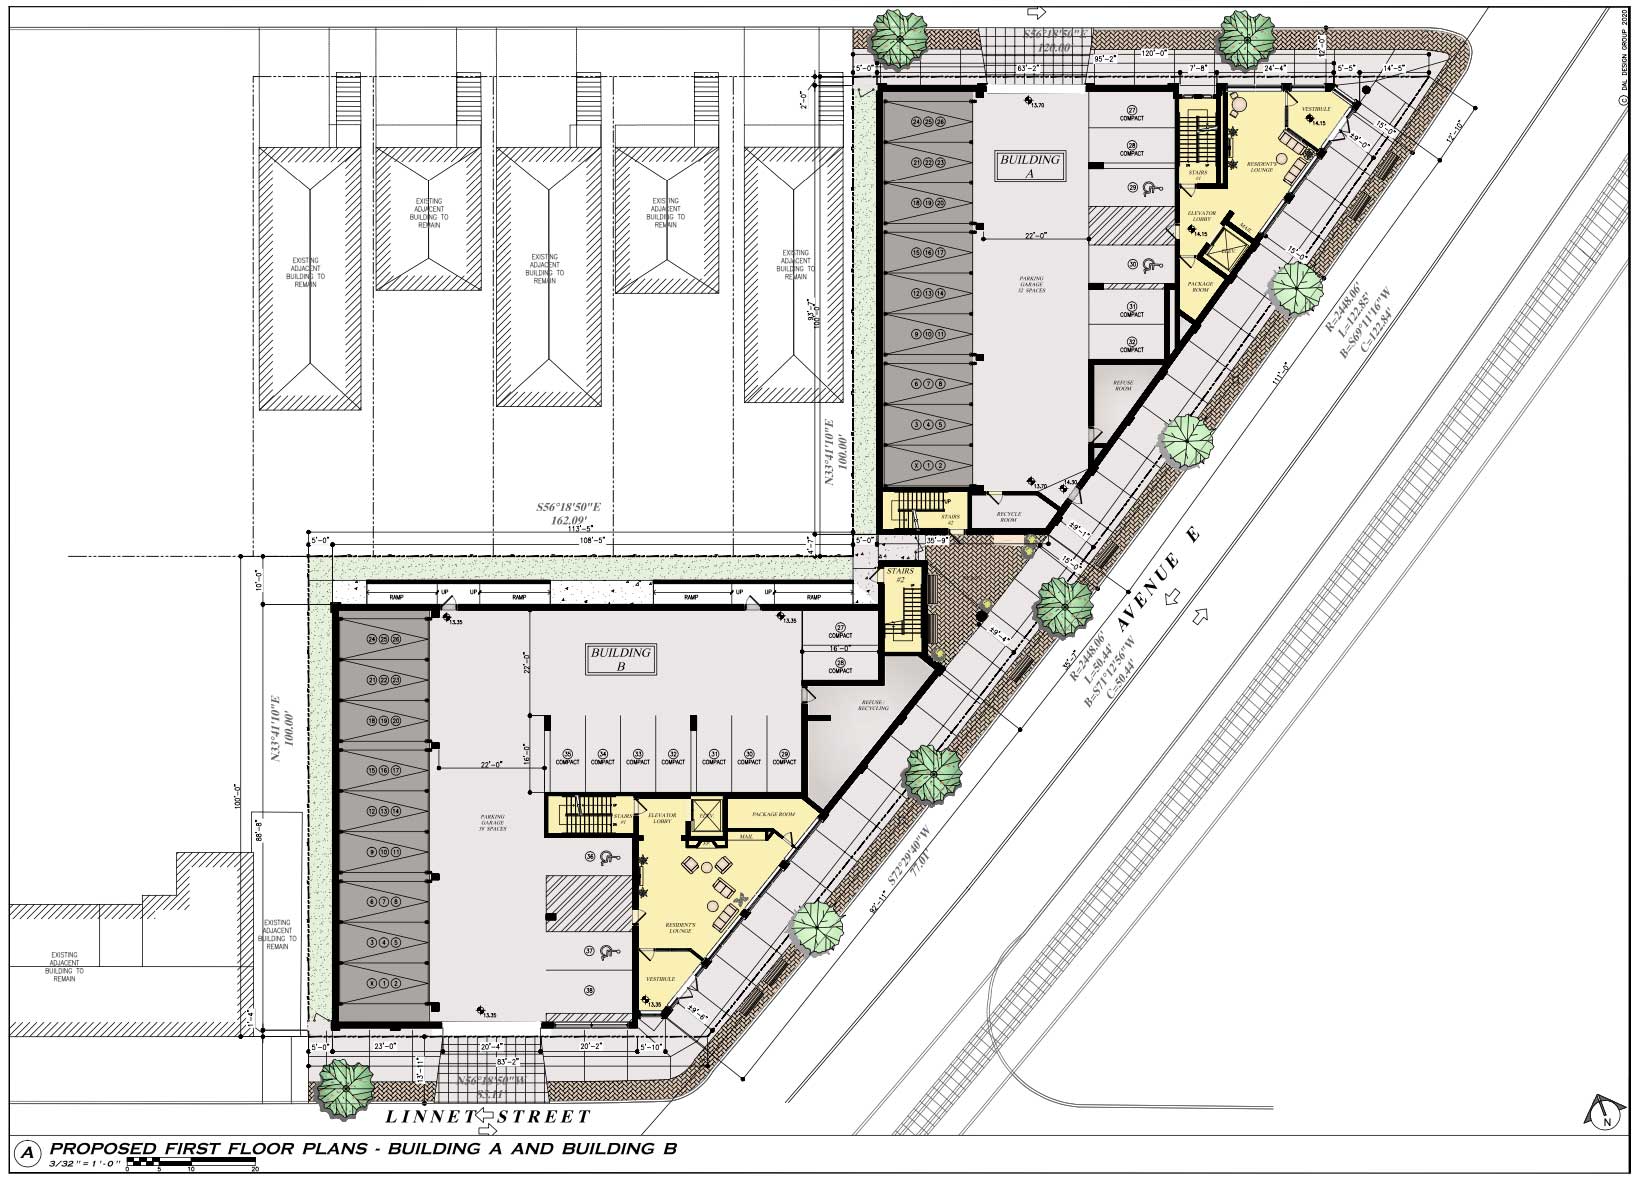 9 13 15 Avenue E Bayonne Site Plan